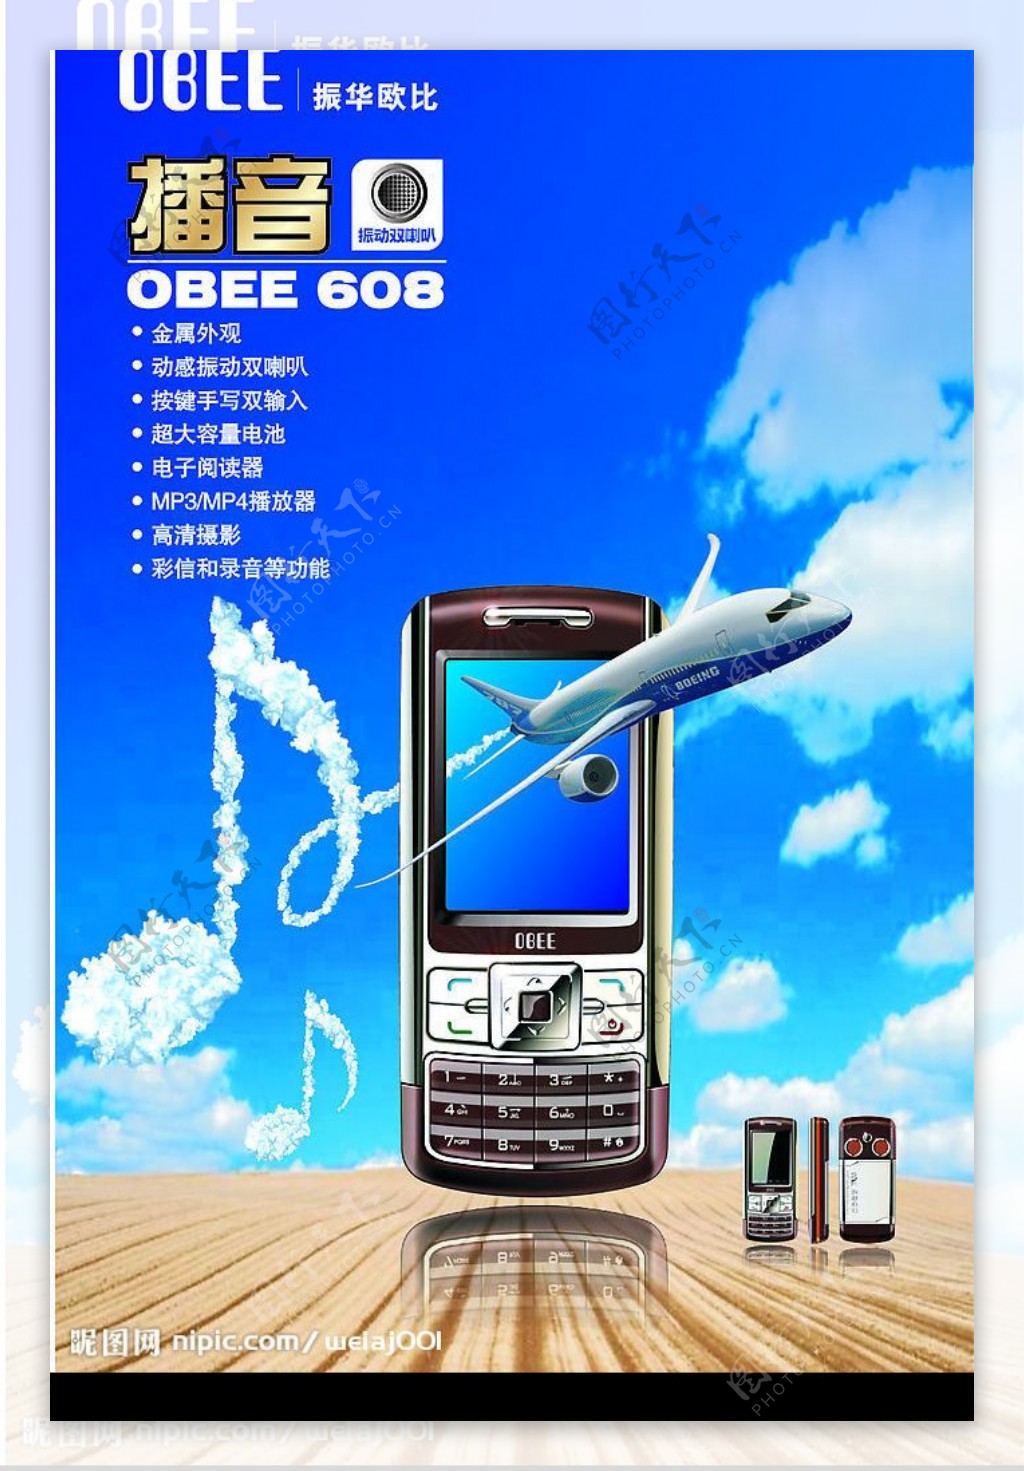 振华手机OBEE608图片